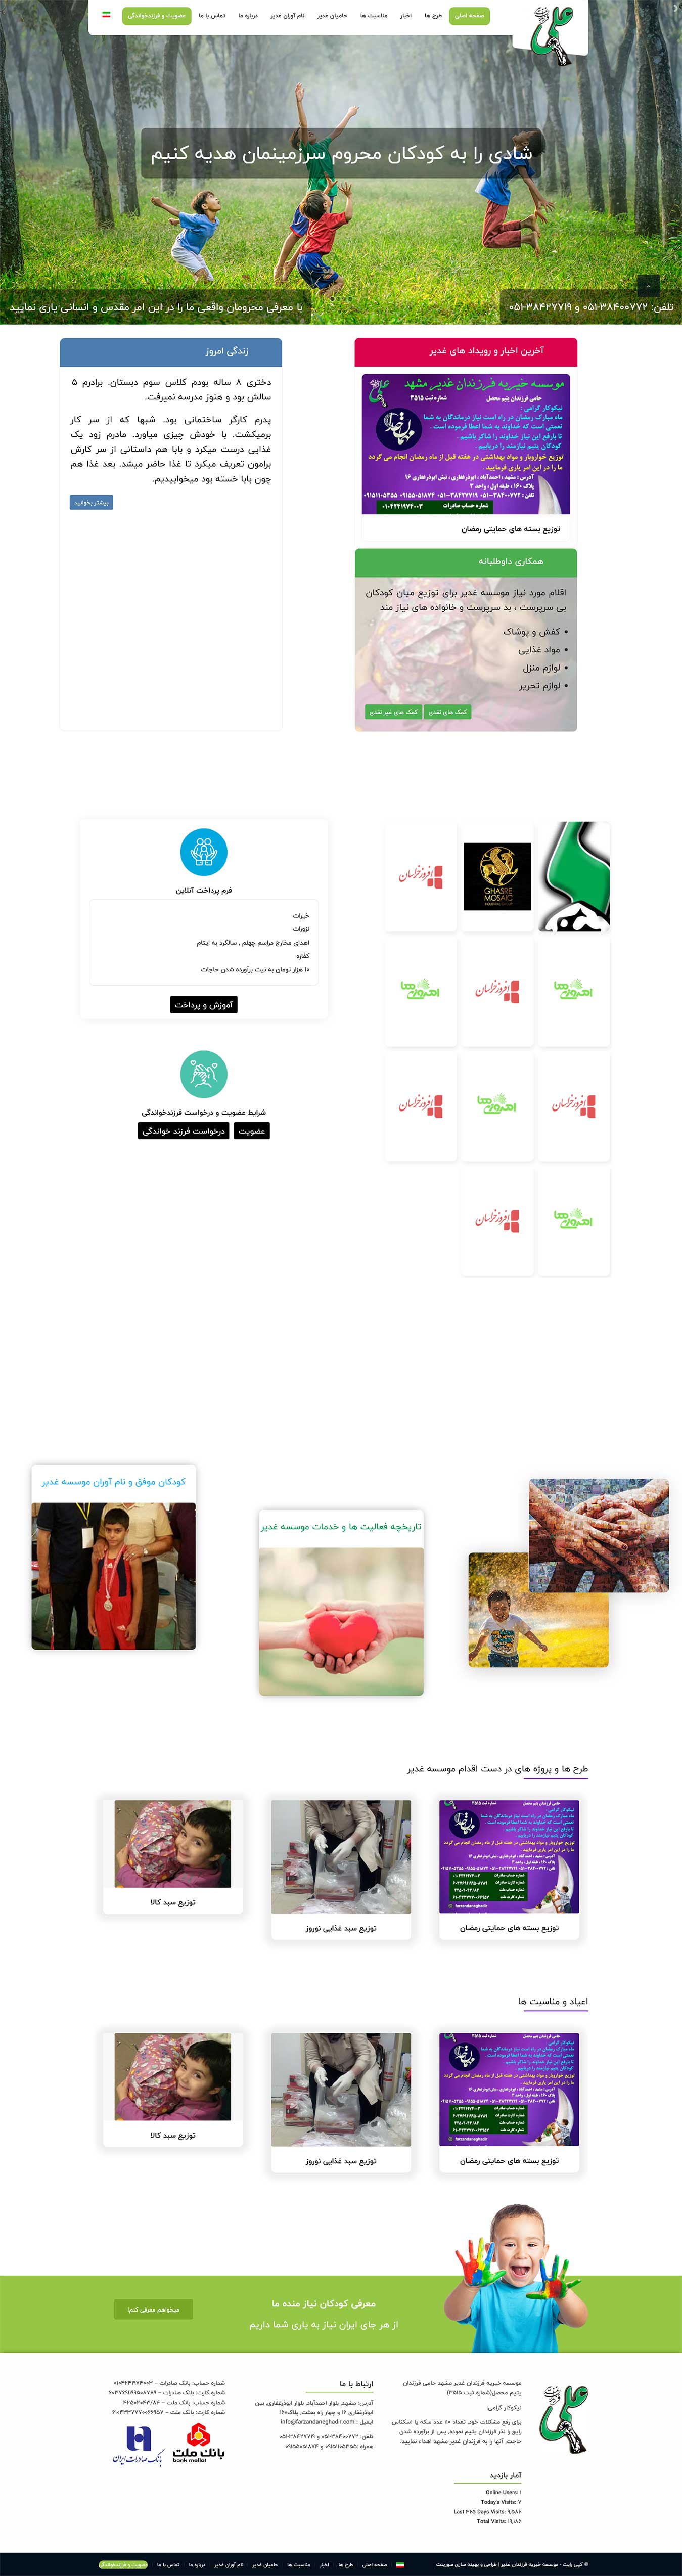 طراحی سایت موسسه خیریه فرزندان غدیر مشهد